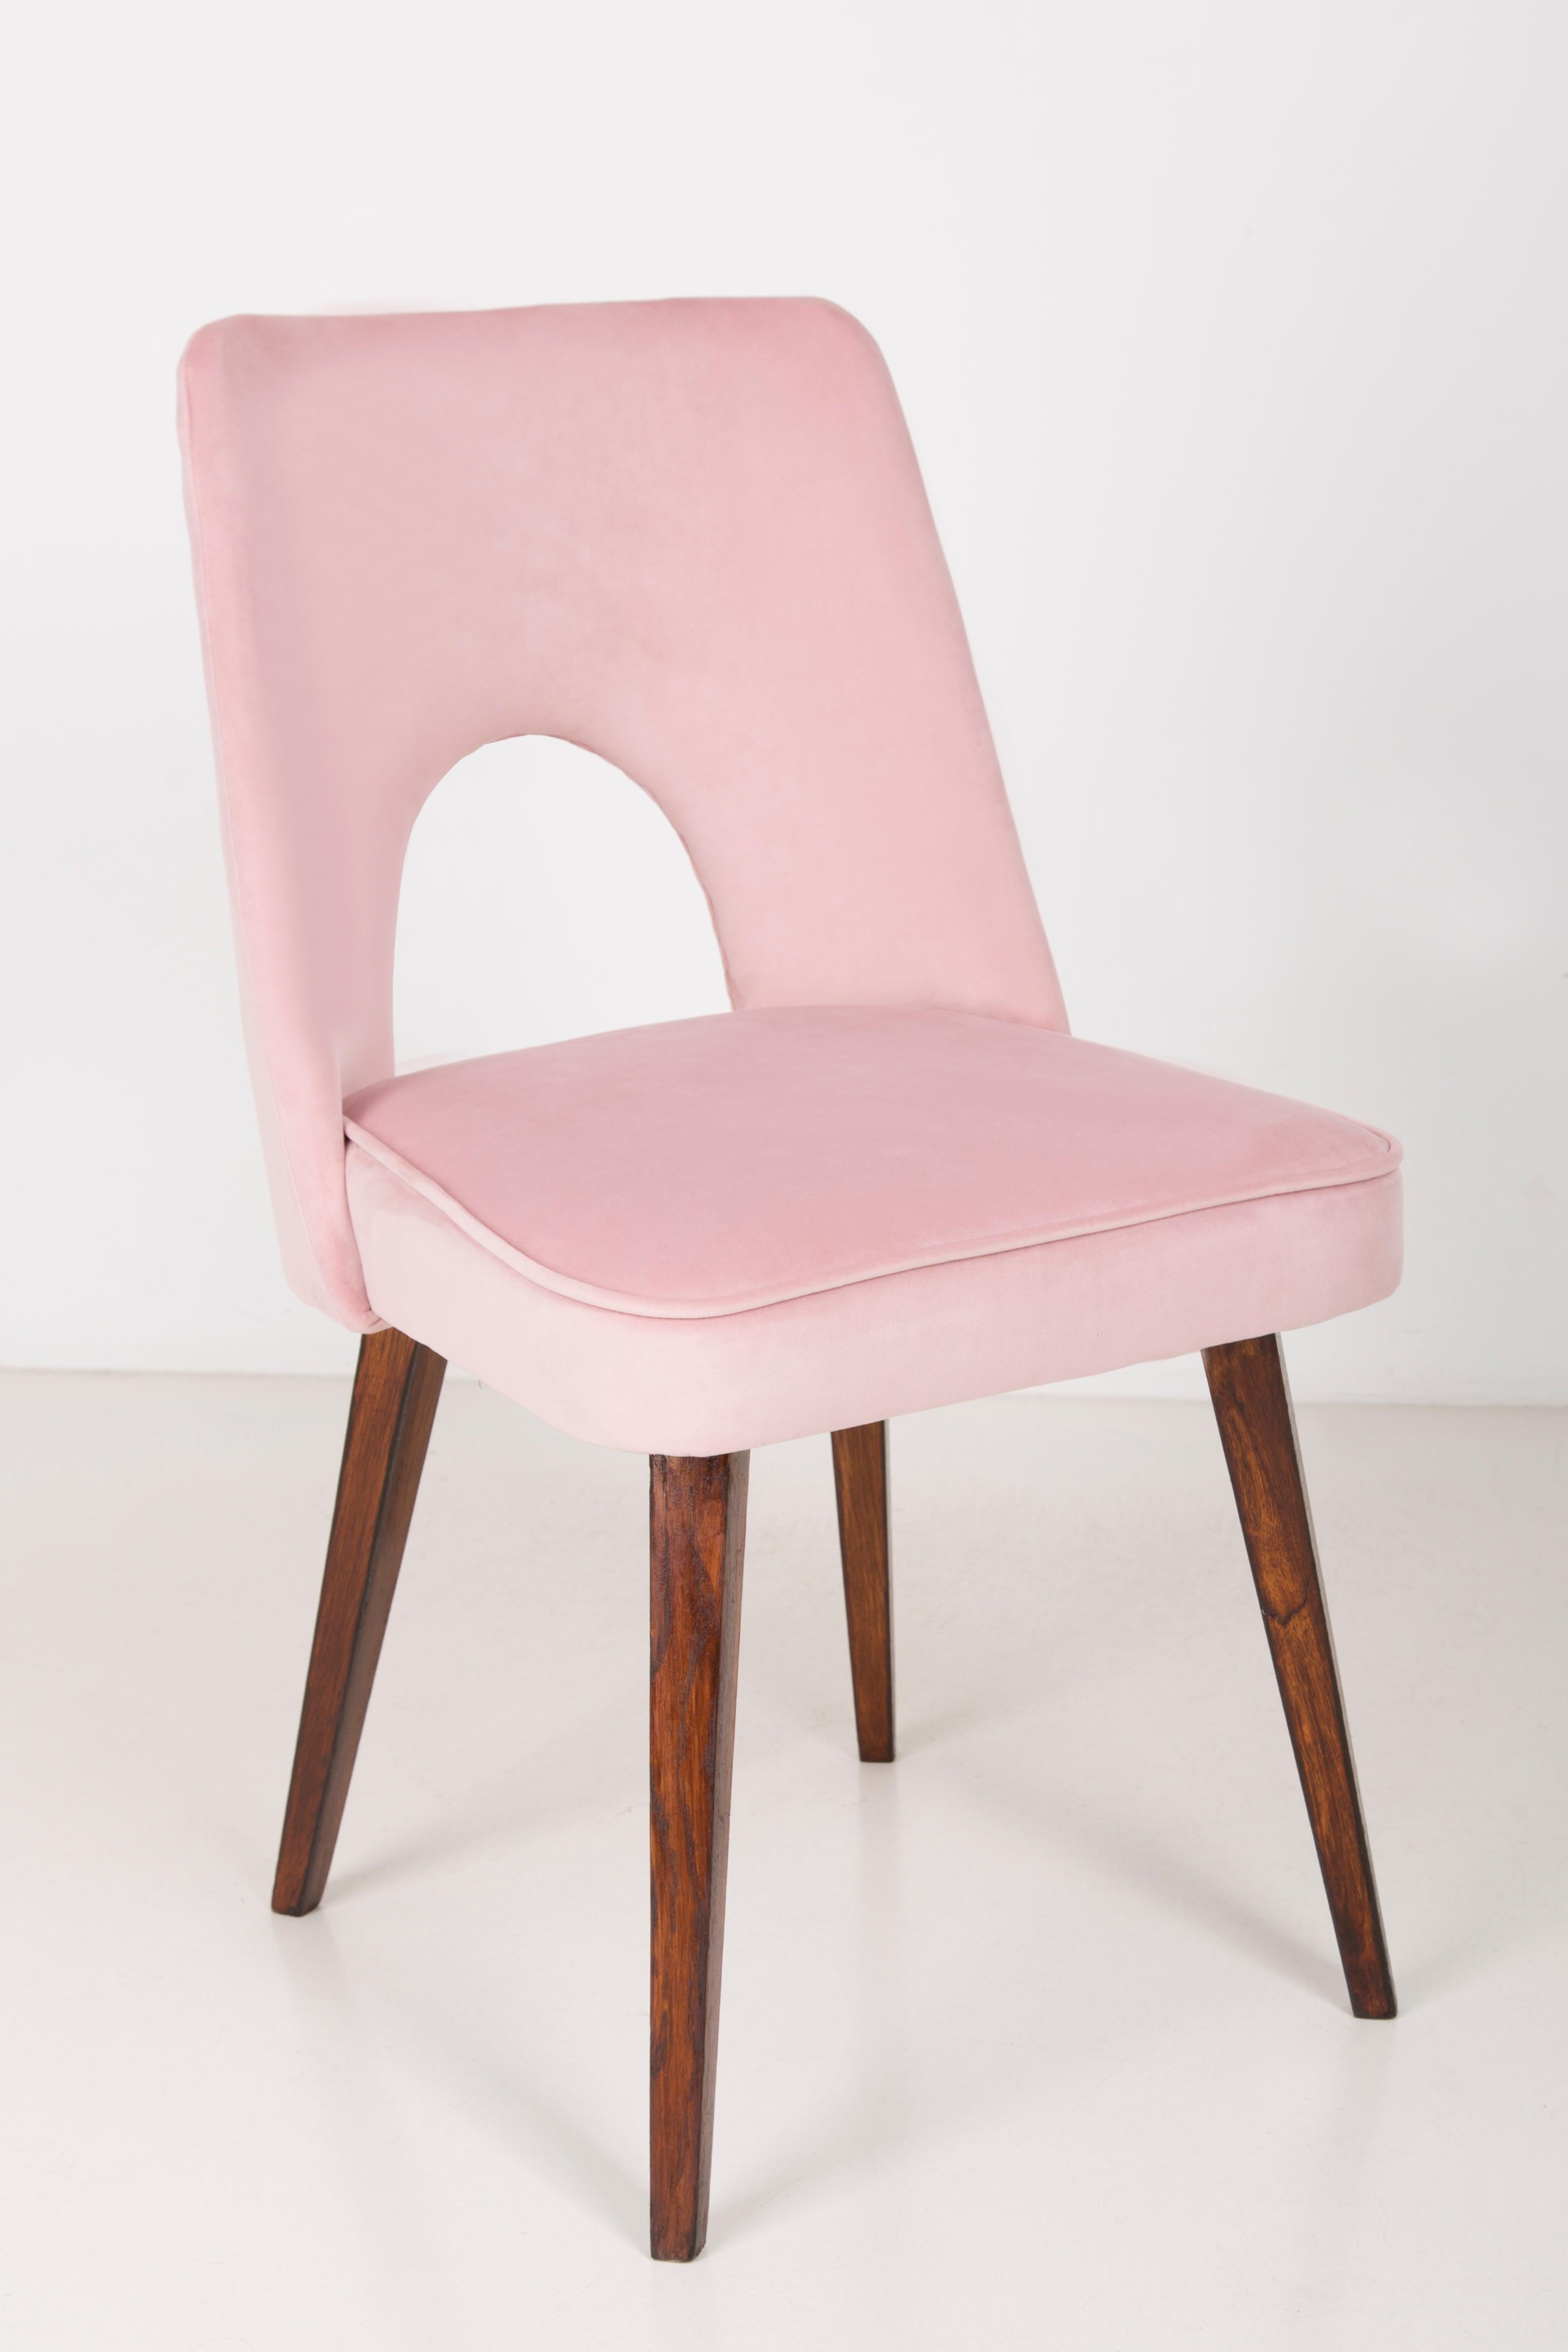 Polonais Ensemble de deux chaises Shell en velours rose pâle, années 1960 en vente